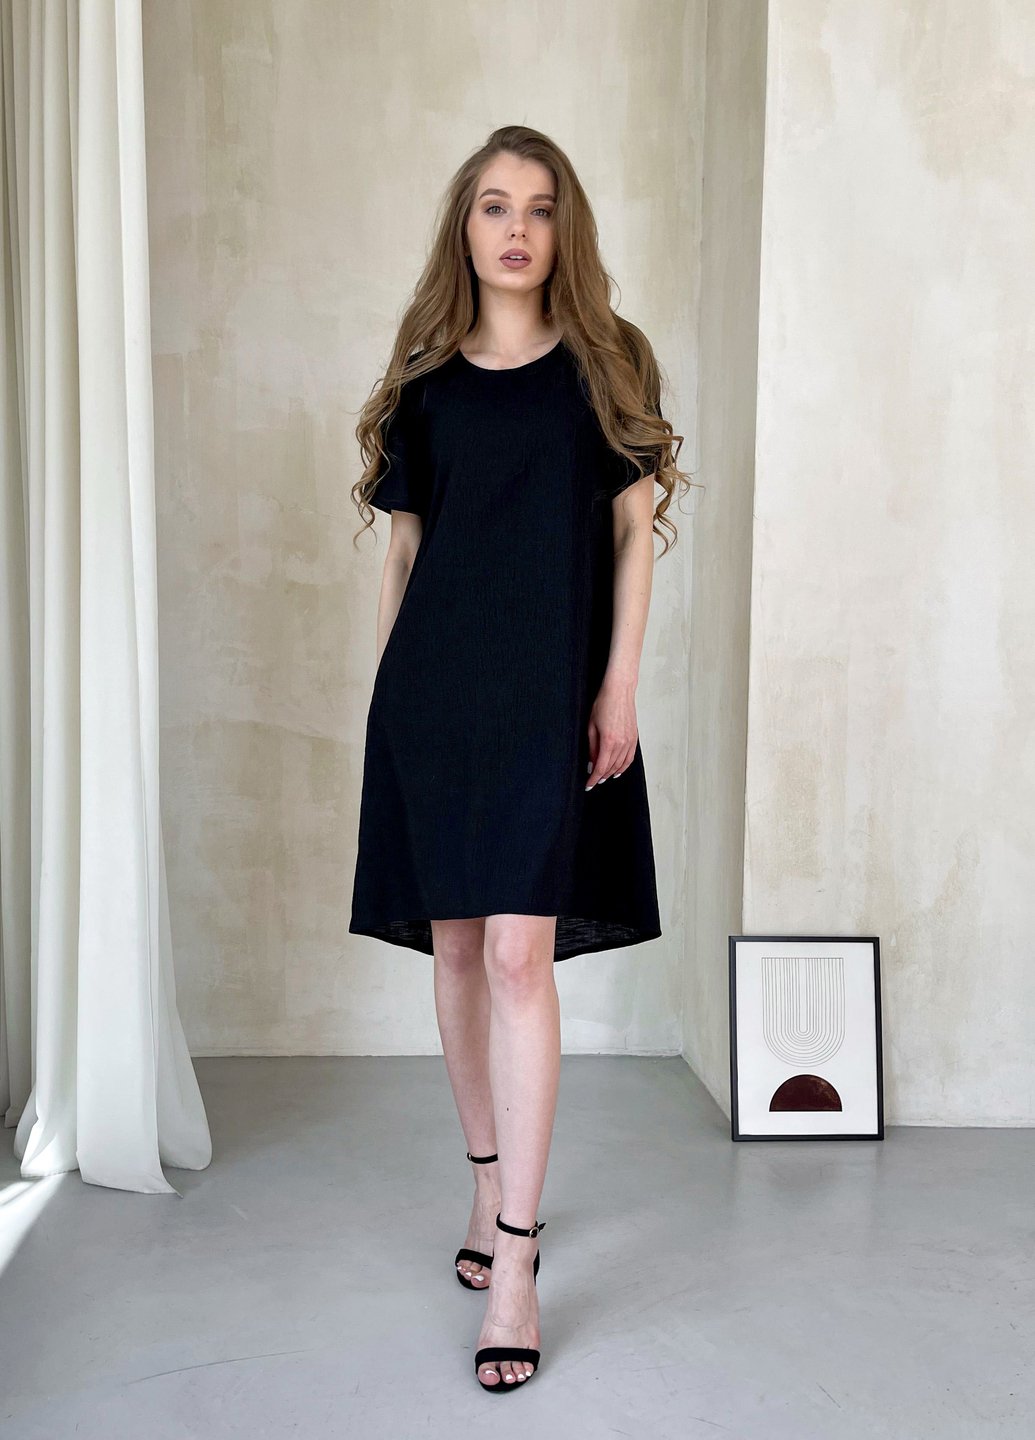 Купить Женское платье до колена однотонное с коротким рукавом из льна черное Merlini Престо 700000181, размер 42-44 (S-M) в интернет-магазине